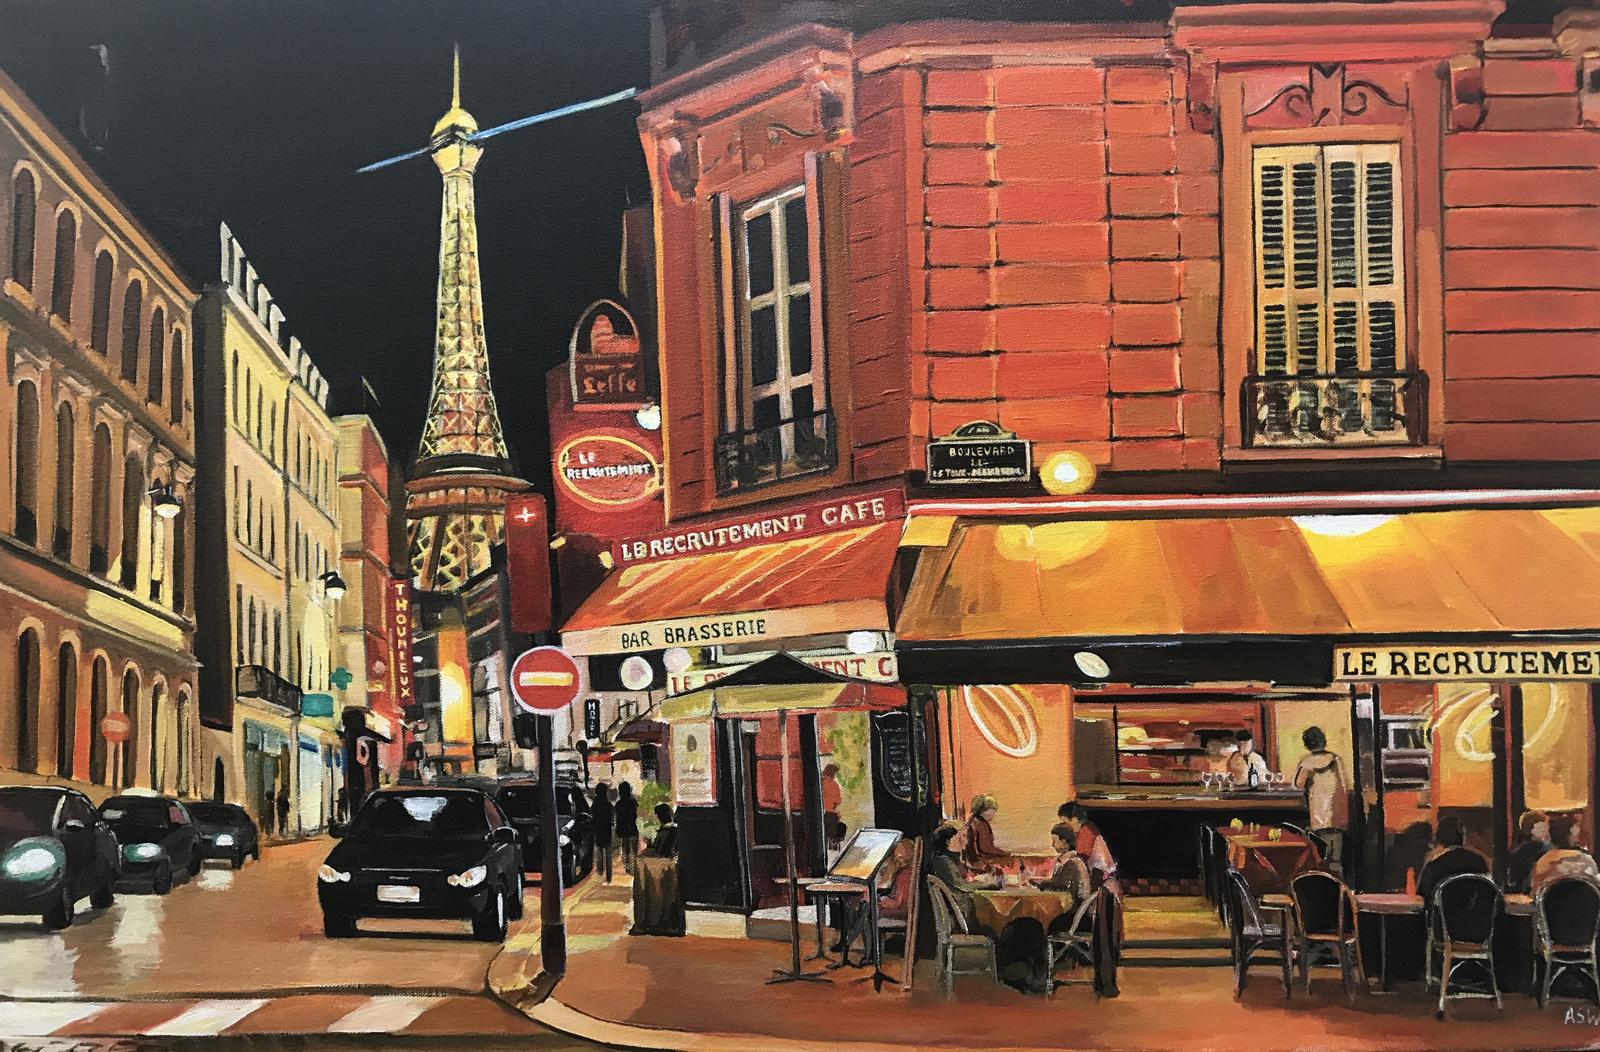 Pariser Café Eiffelturm Paris Frankreich Limited Edition Print von britischen Künstler. Ein hochwertiger Druck in limitierter Auflage aus Angelas Europa-Serie, der den Eiffelturm zeigt - eines der bekanntesten Bauwerke Europas. Das Pariser Café ist